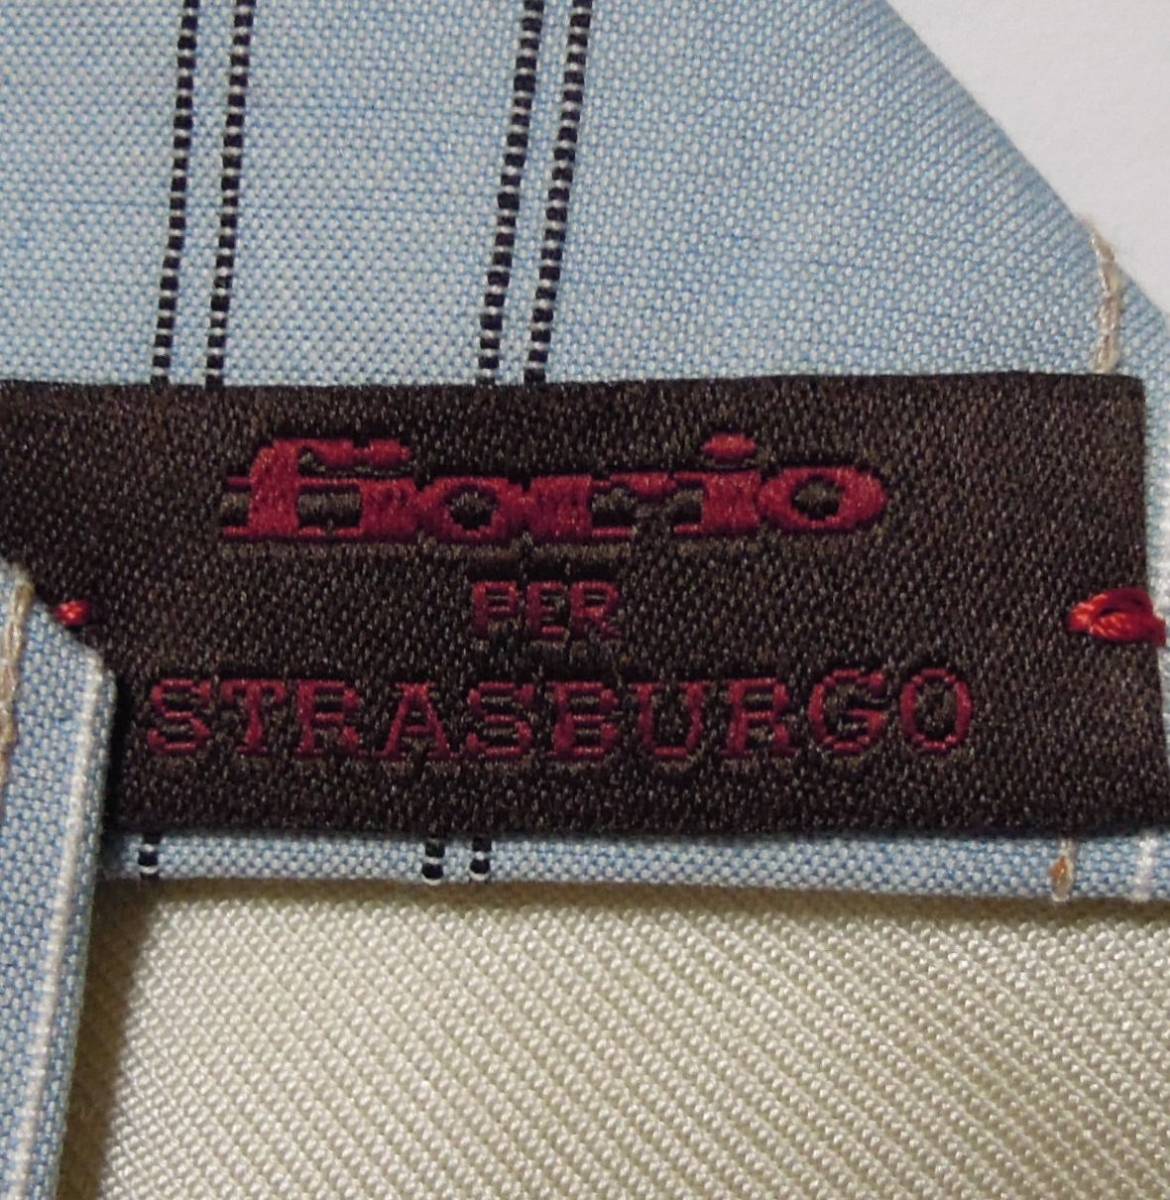  новый товар -тактный lasbrugo покупка обычная цена 17,600 иен FIORIO /fio rio хлопок мульти- полоса галстук sax 